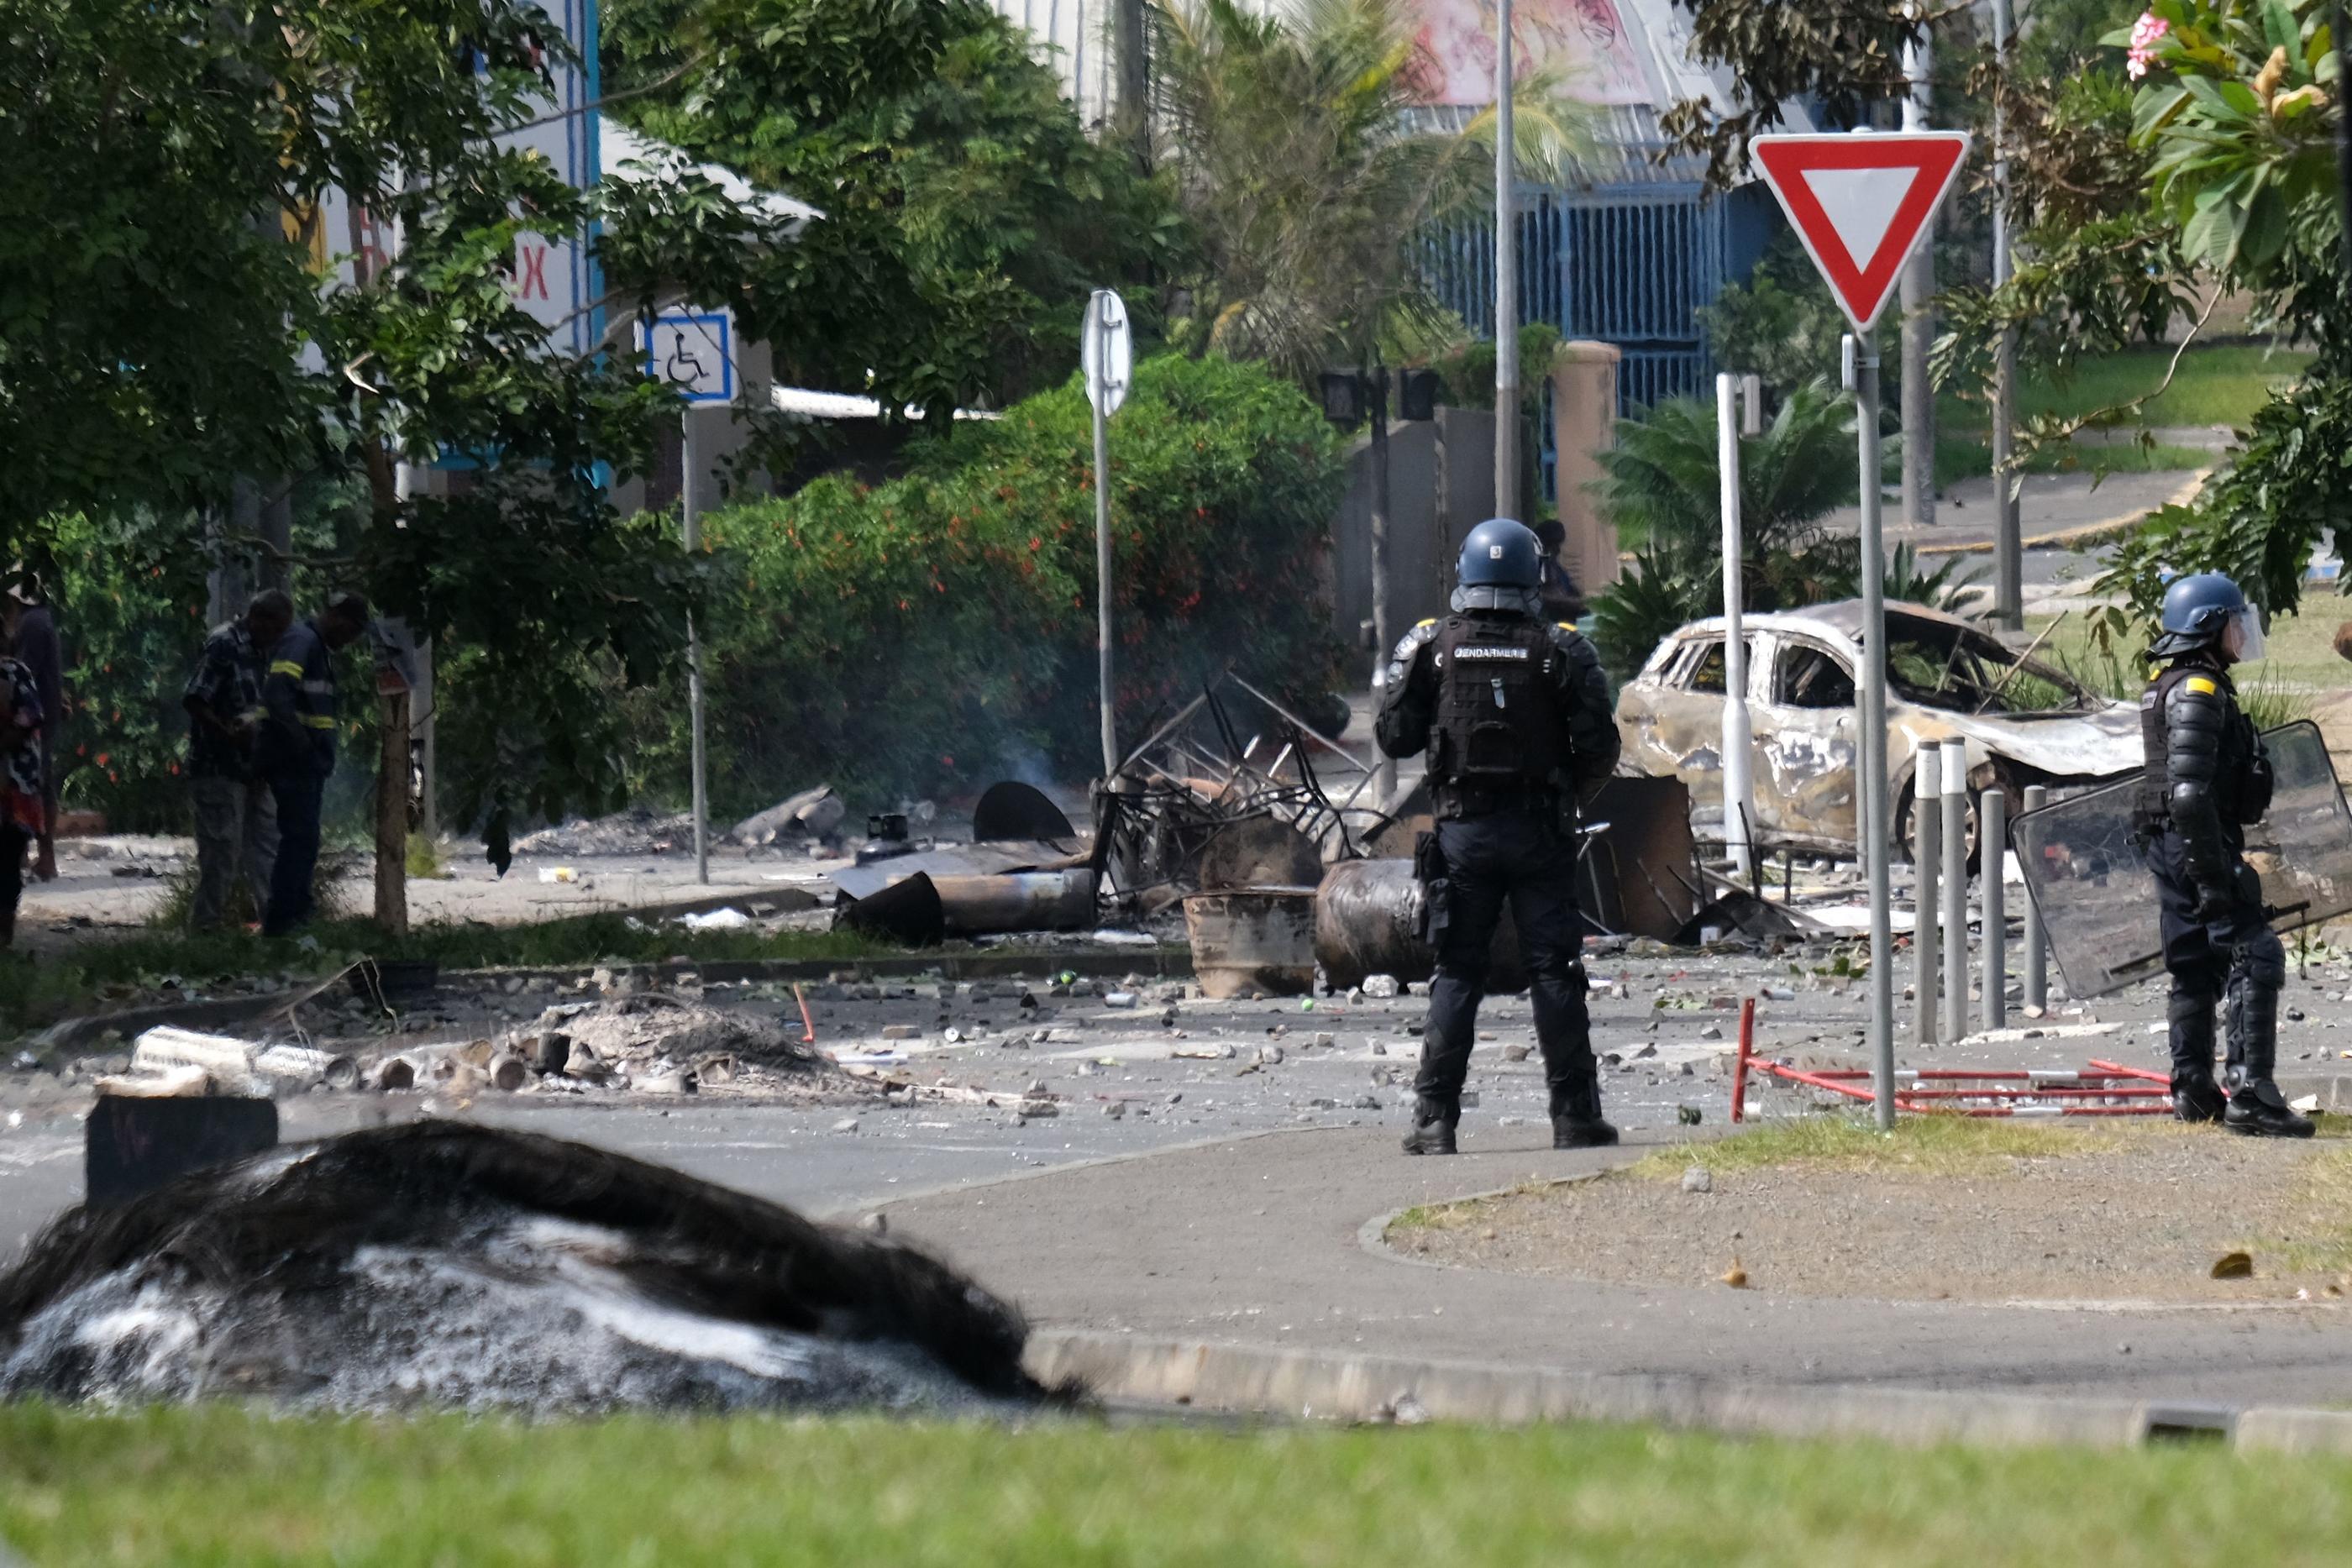 Le ministre de l'Intérieur Gérald Darmanin a confirmé la mort du gendarme grièvement blessé en Nouvelle-Calédonie. AFP / MEHDI FEDOUACH